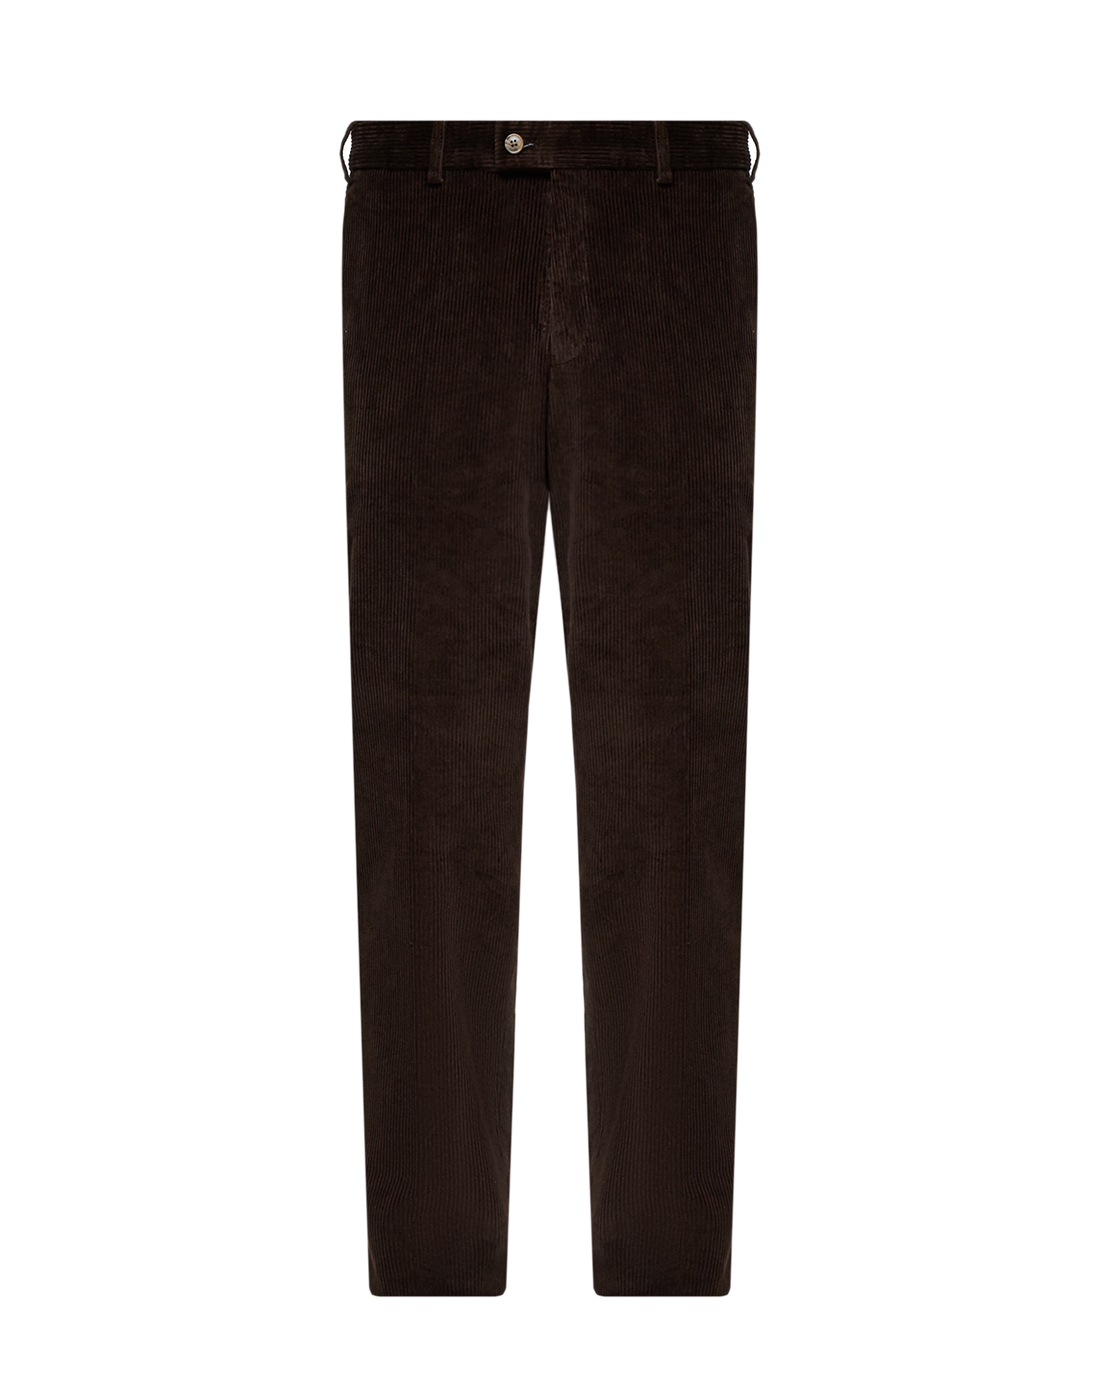 Мужские коричневые вельветовые брюки Hiltl  S52473 30 71700-1